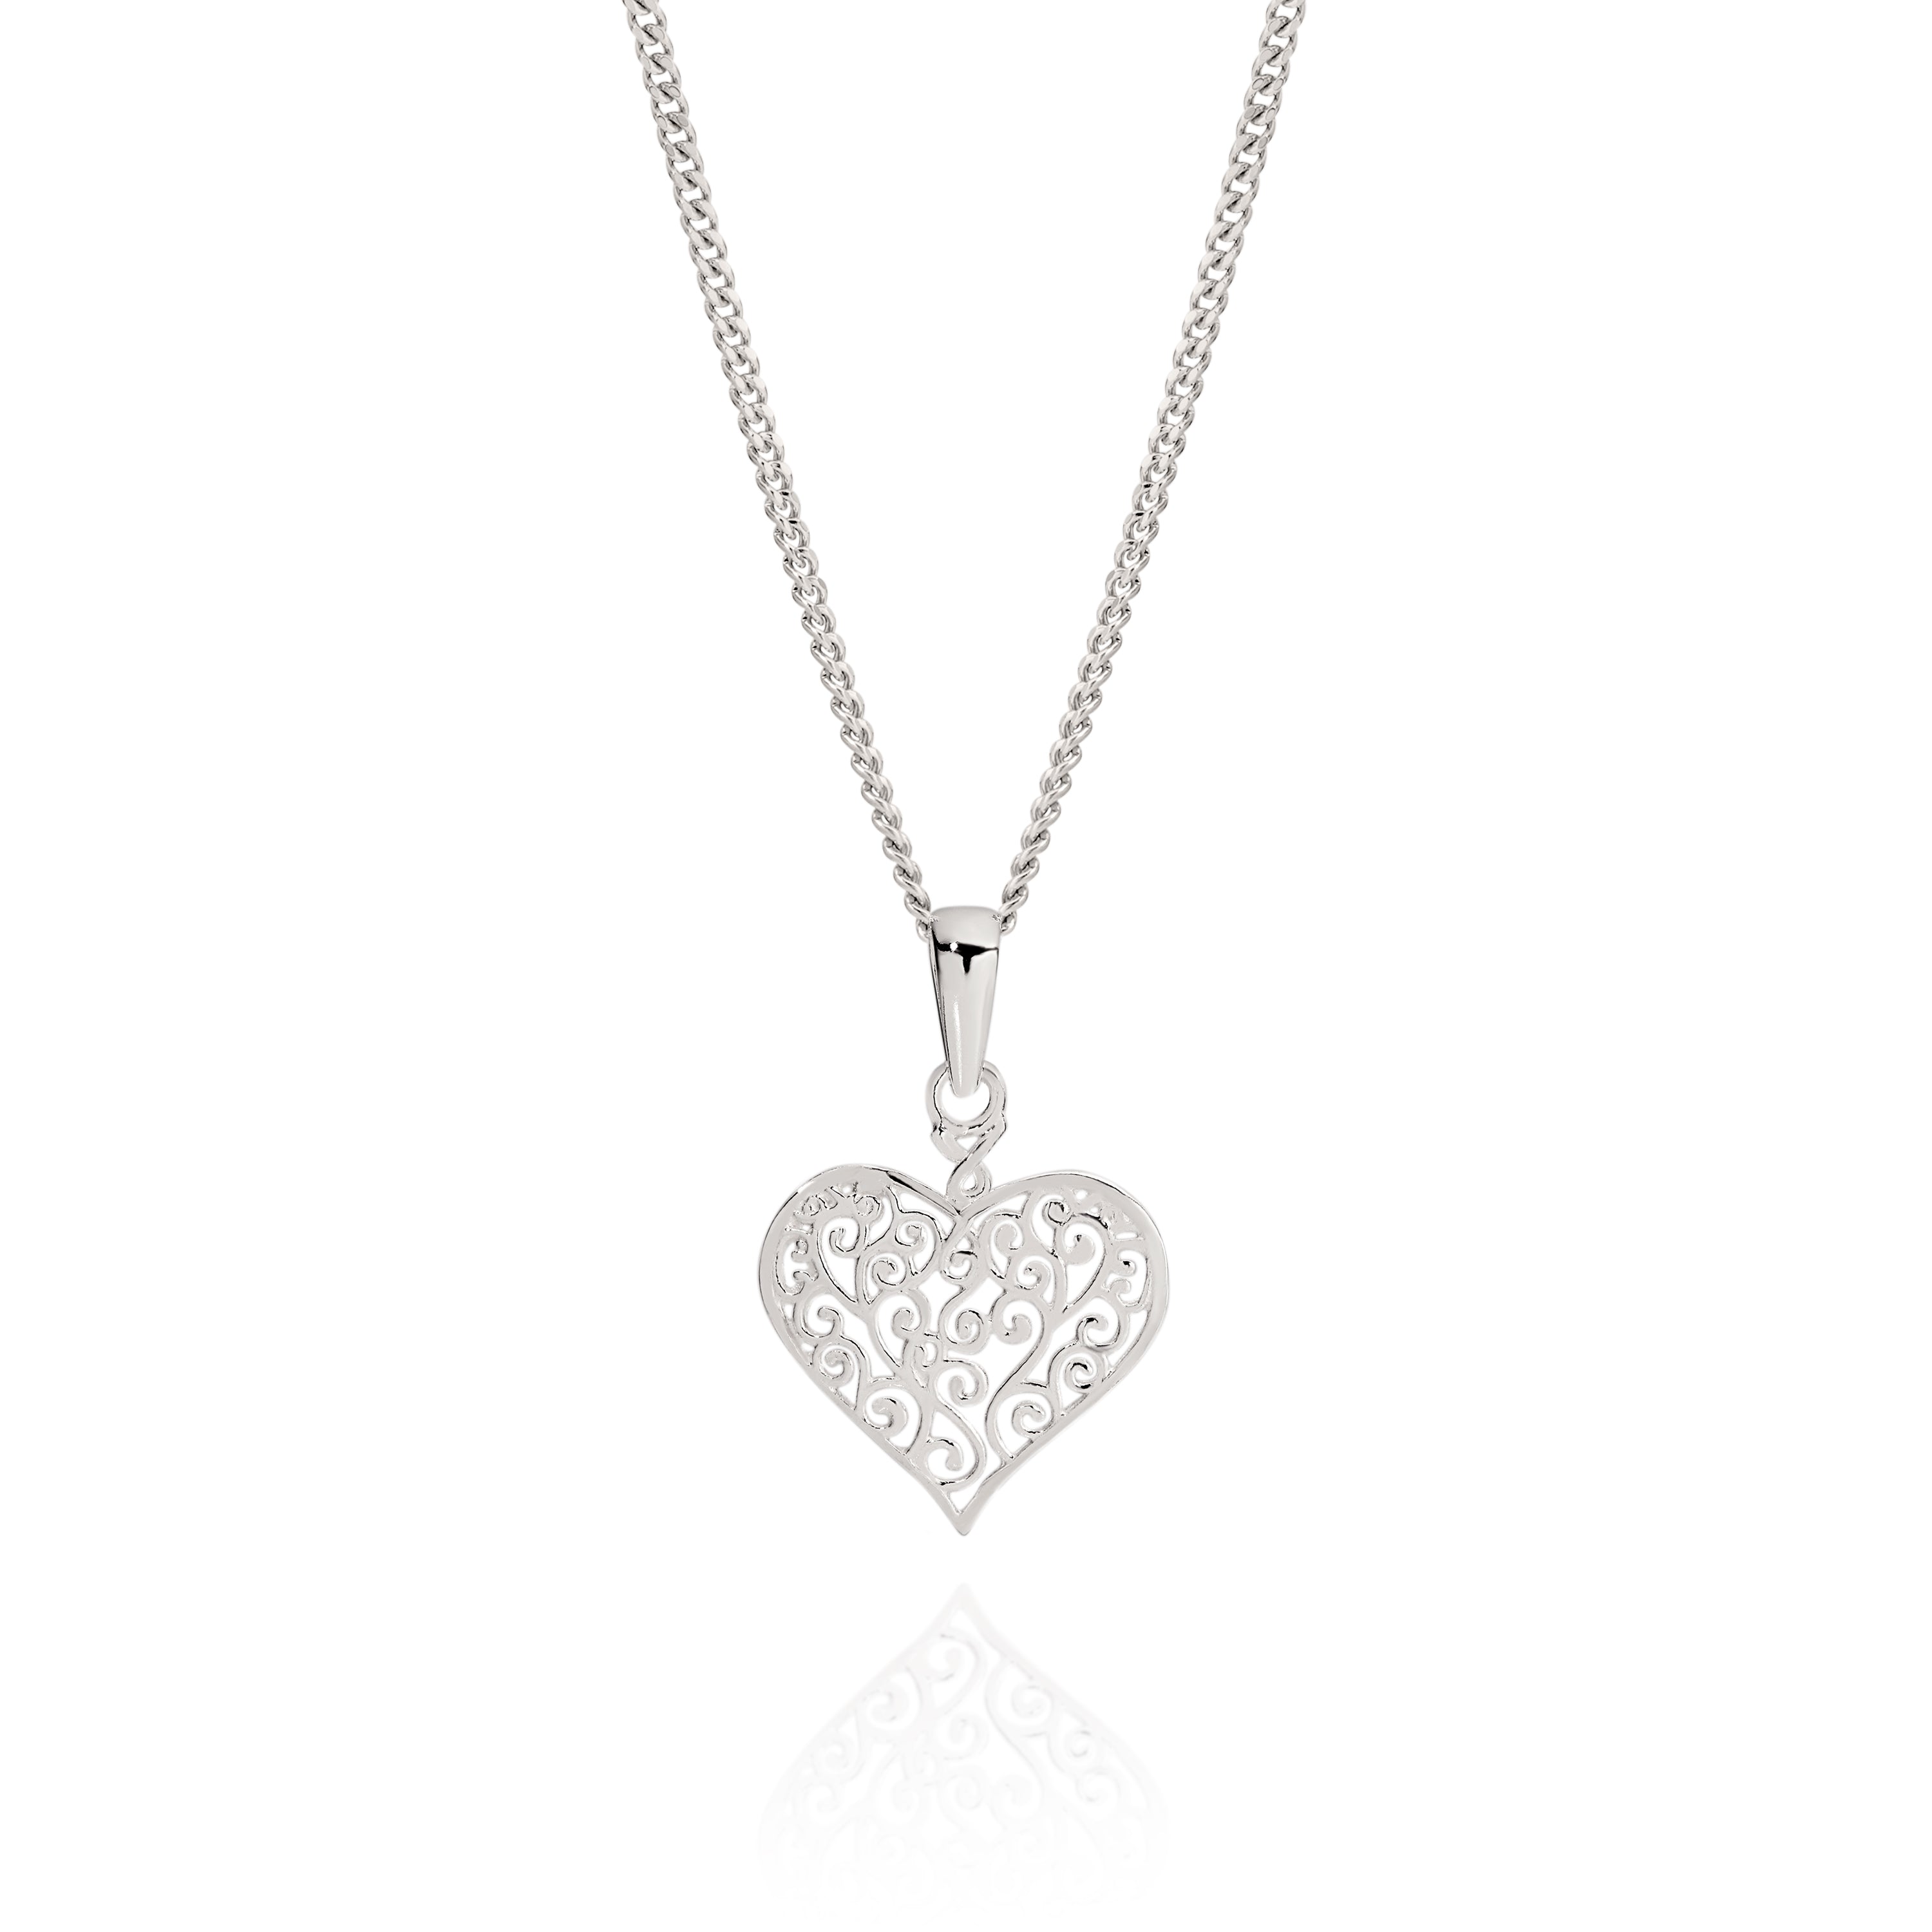 Silver filigree heart pendant